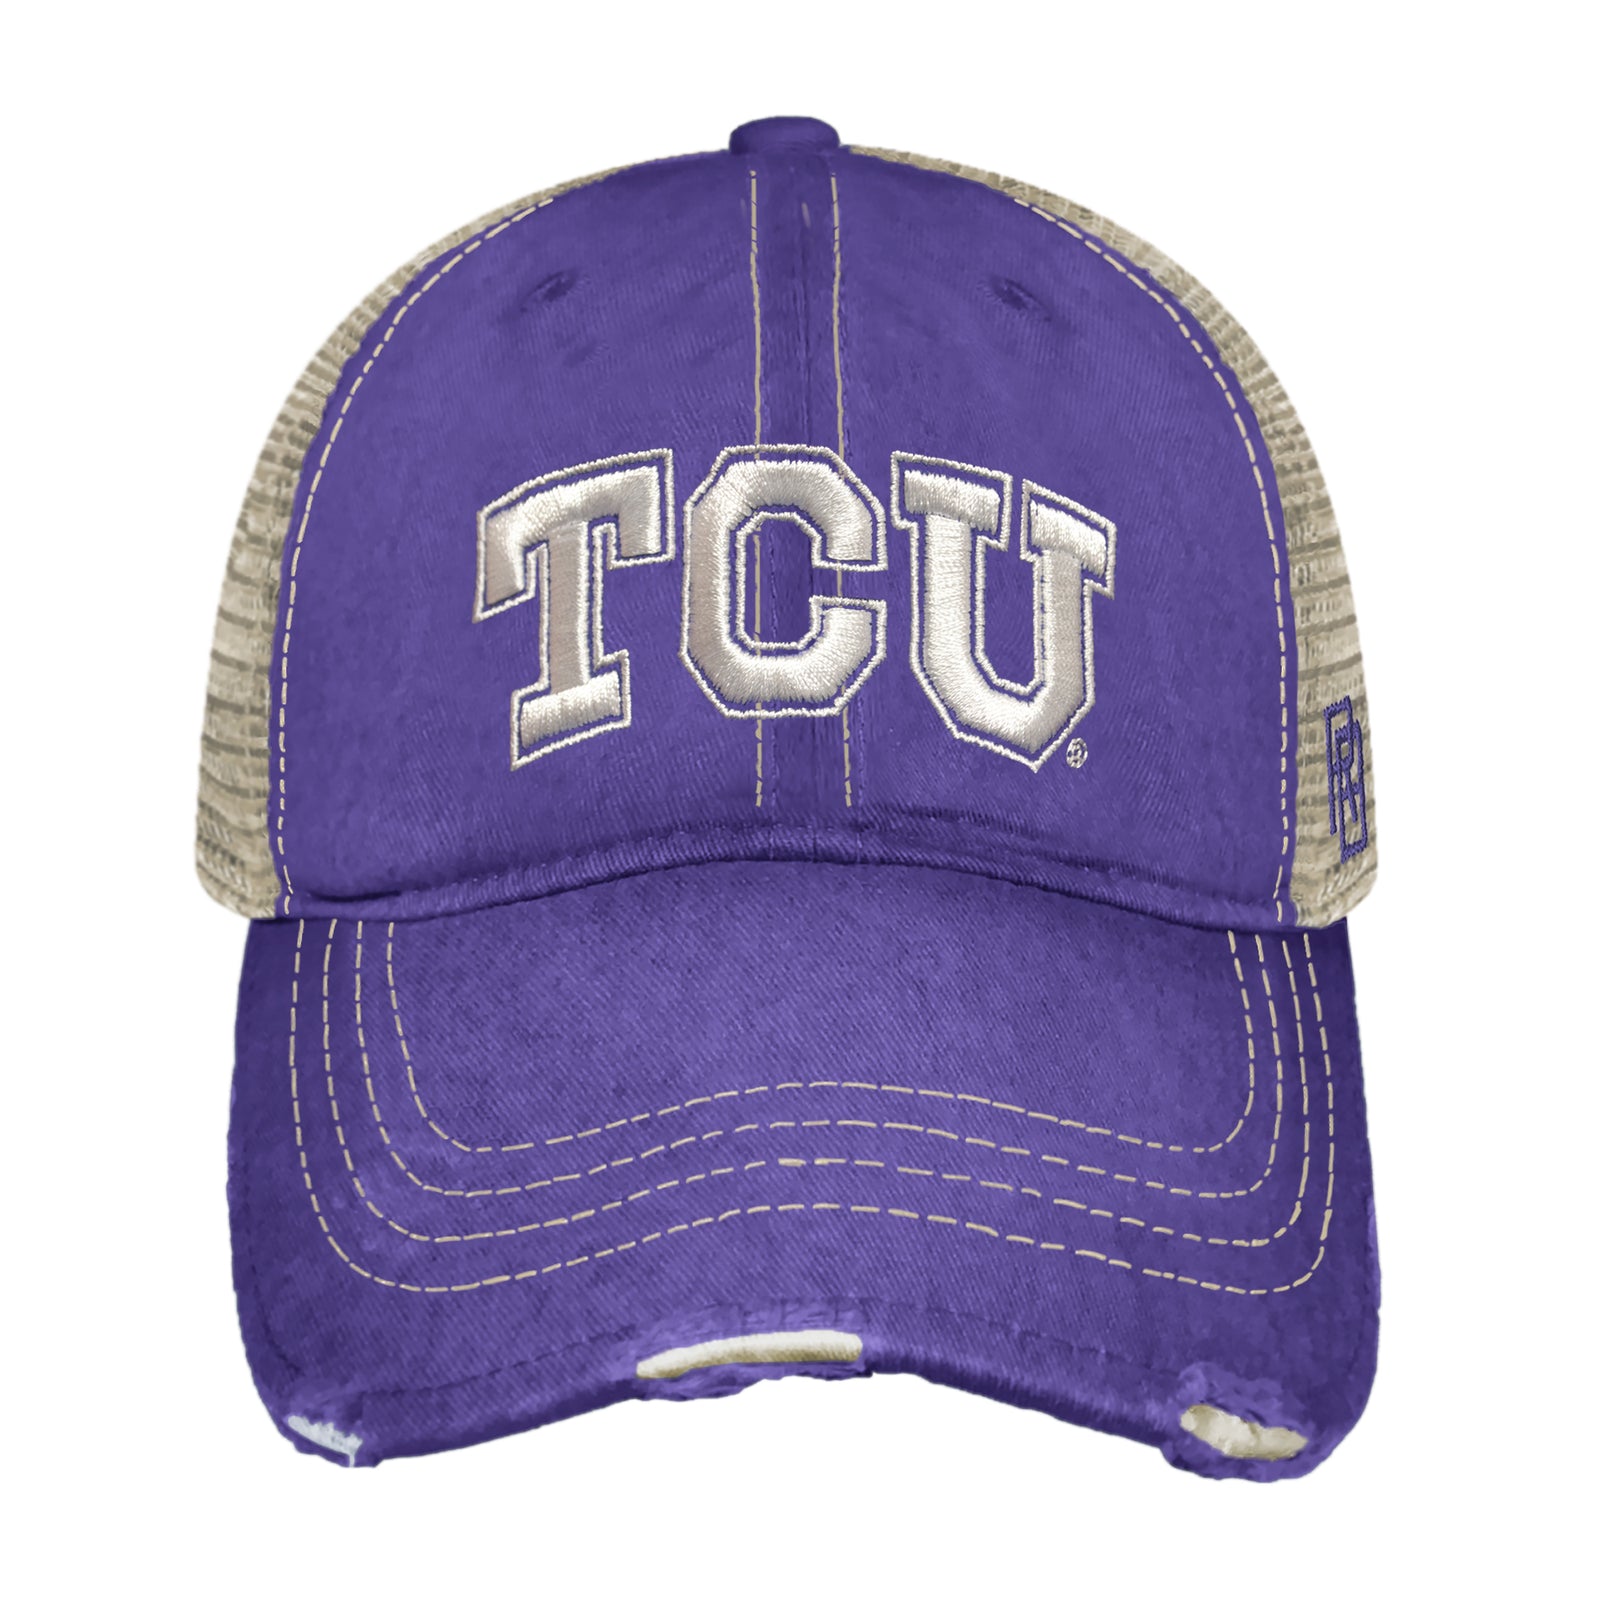 TCU Horned Frogs Snapback Trucker Hat